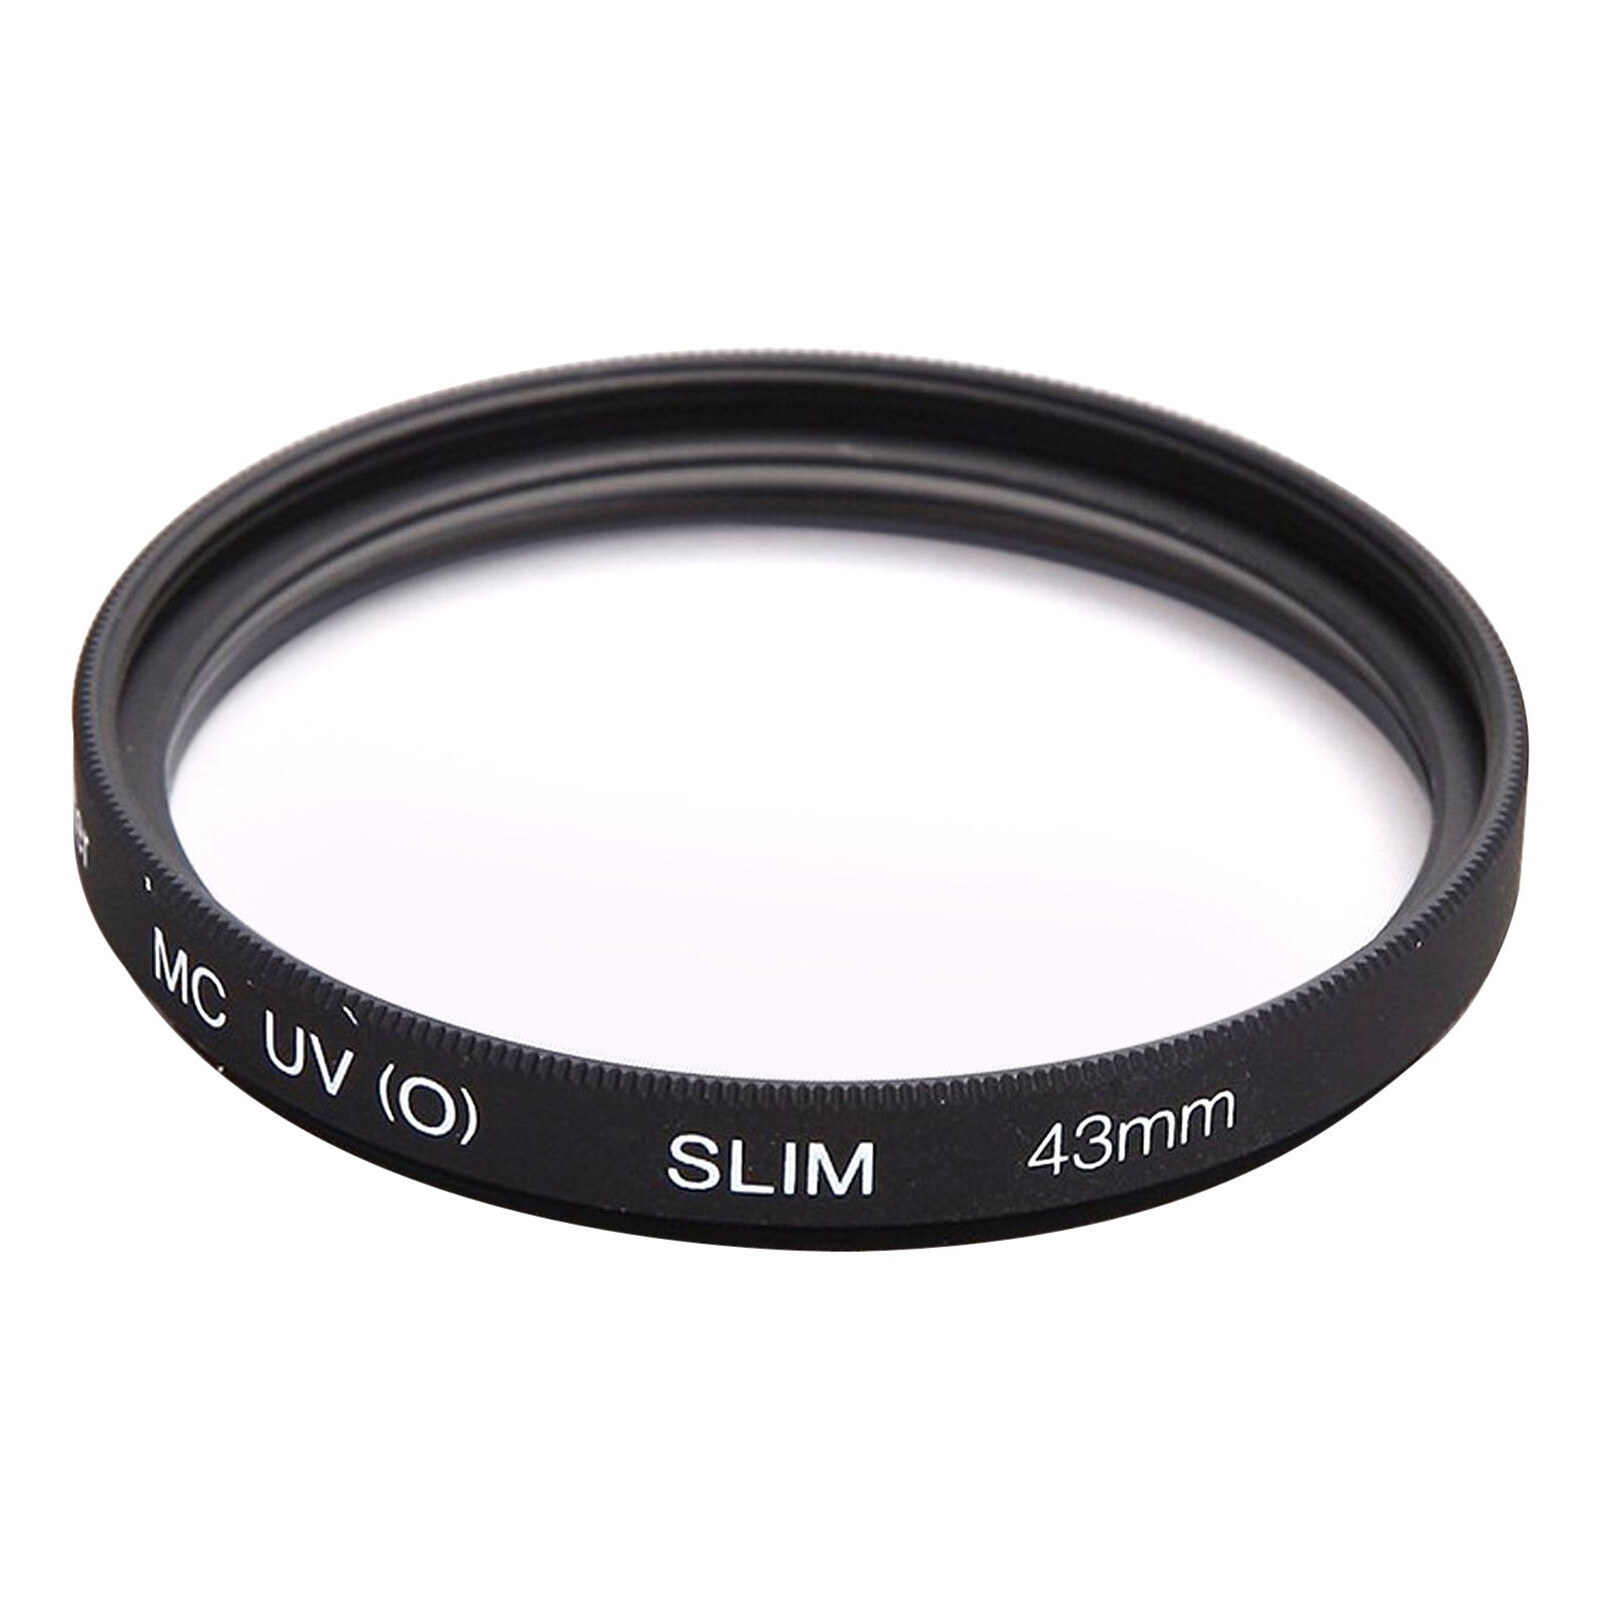 Canon EF 75-300/4,0-5,6 III USM + UV Filter